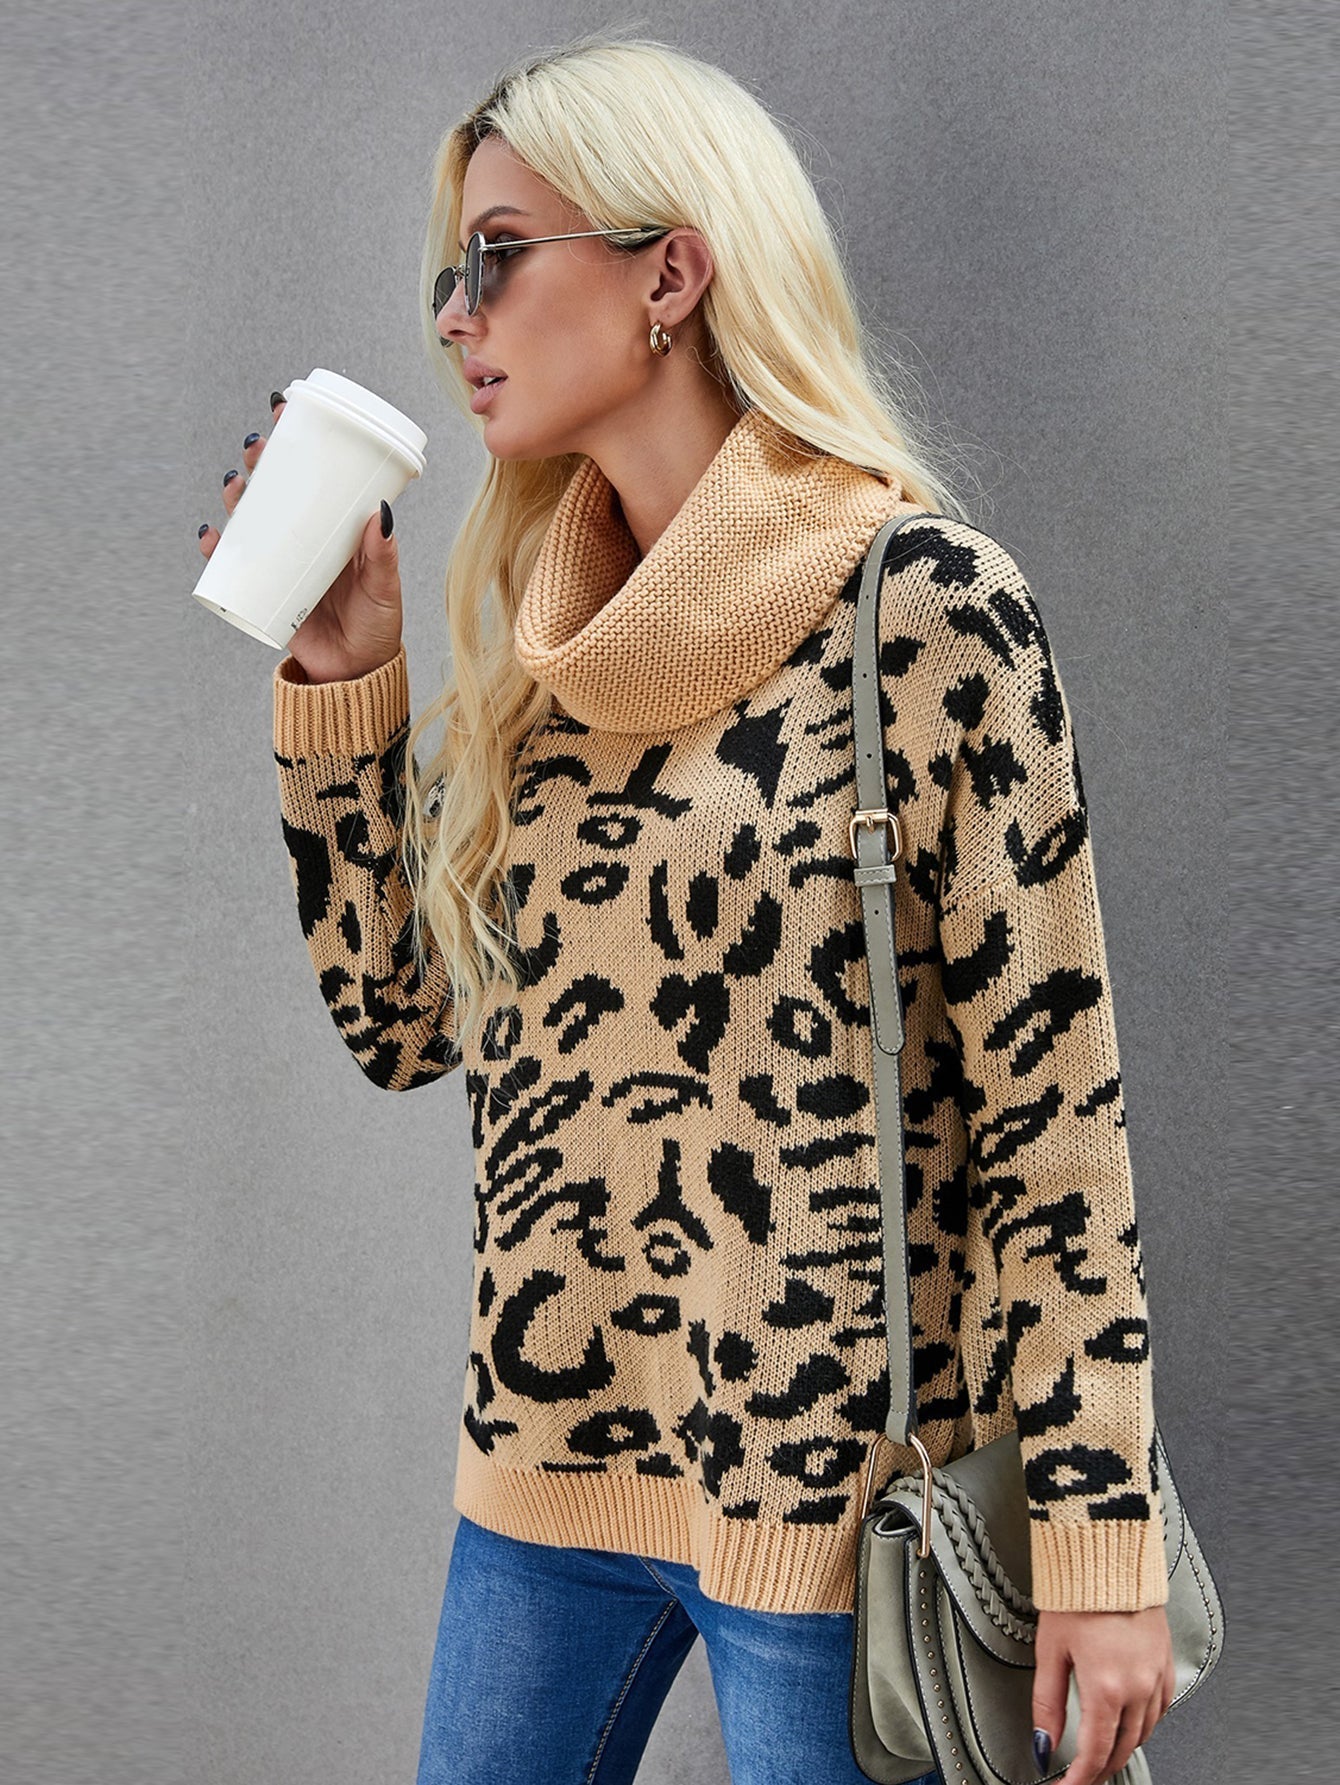 Women Leopard Cozy Long Sleeves Turtleneck Sweater Tops Sai Feel